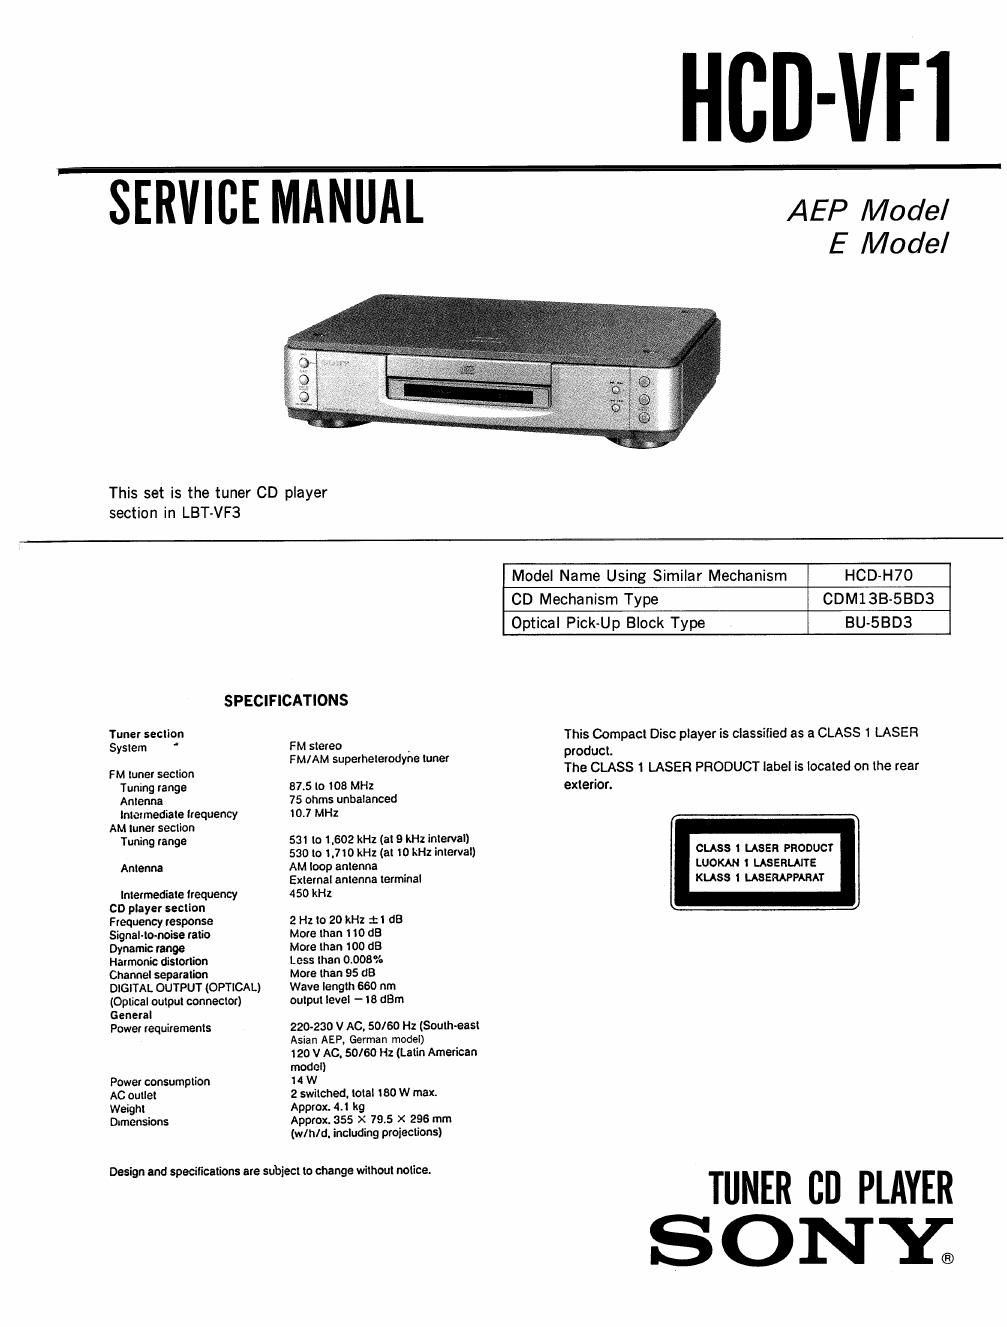 sony hcd vf 1 service manual